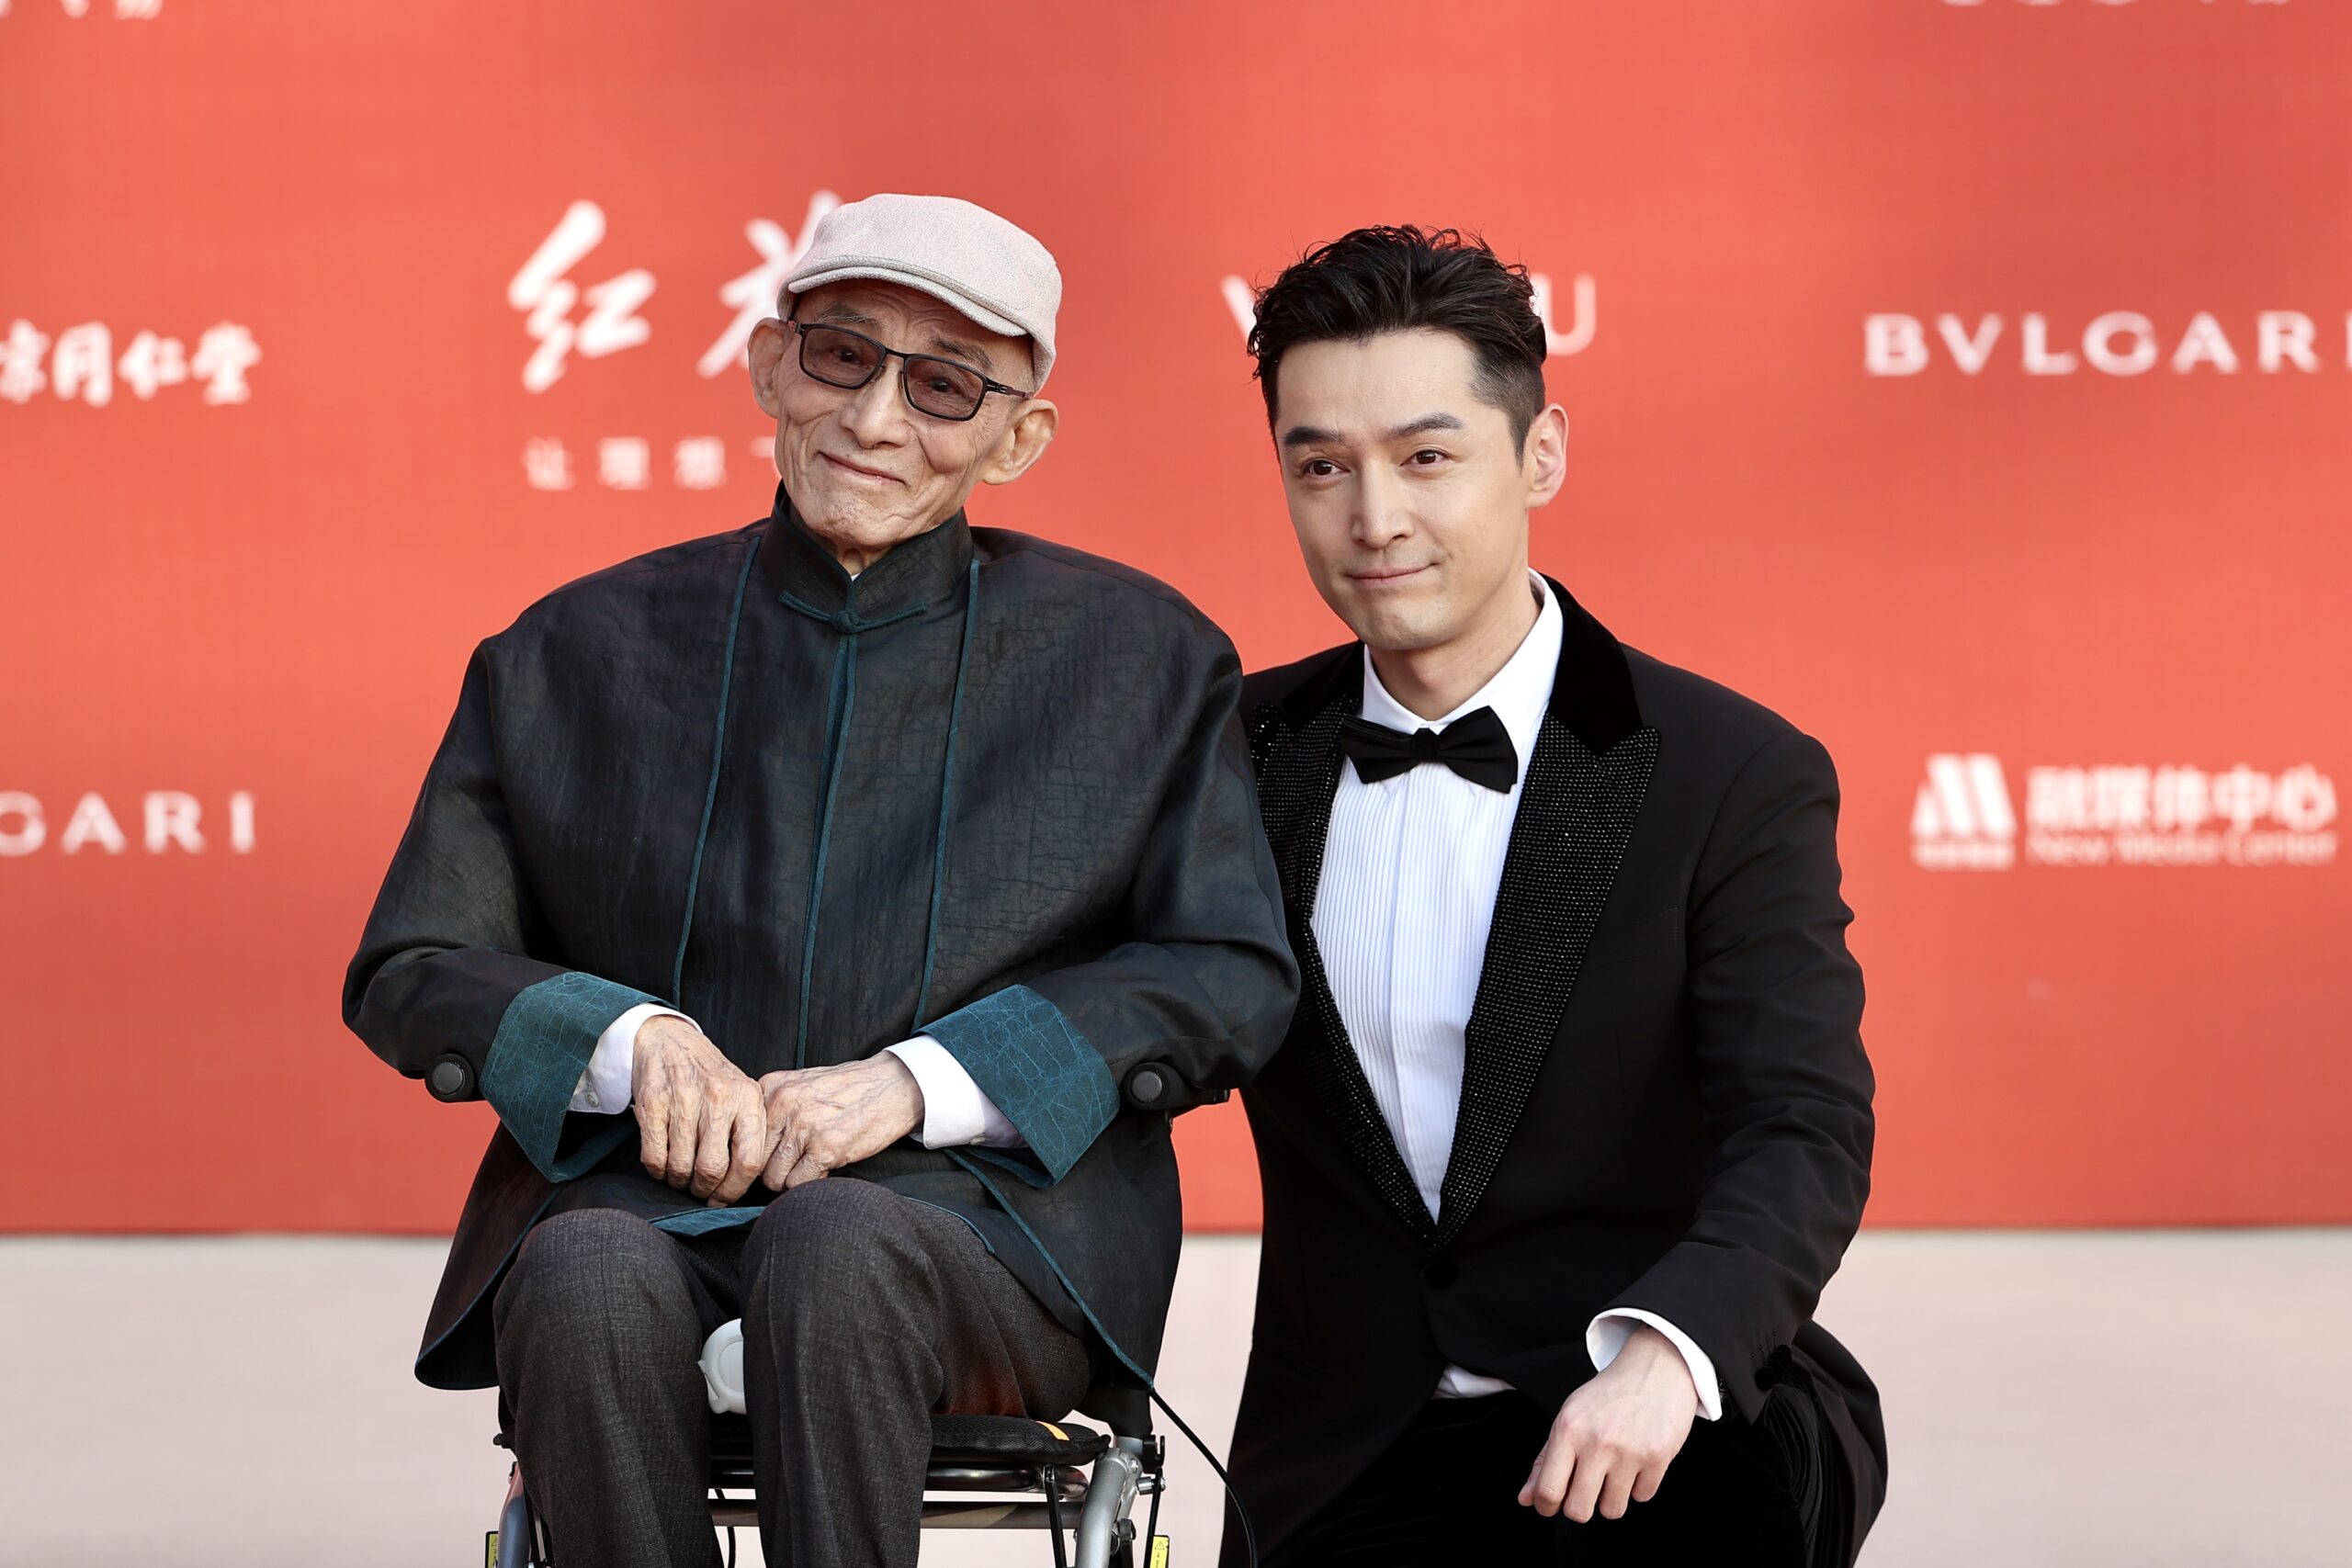 游本昌和胡歌亮相第十四届北京国际电影节开幕红毯仪式